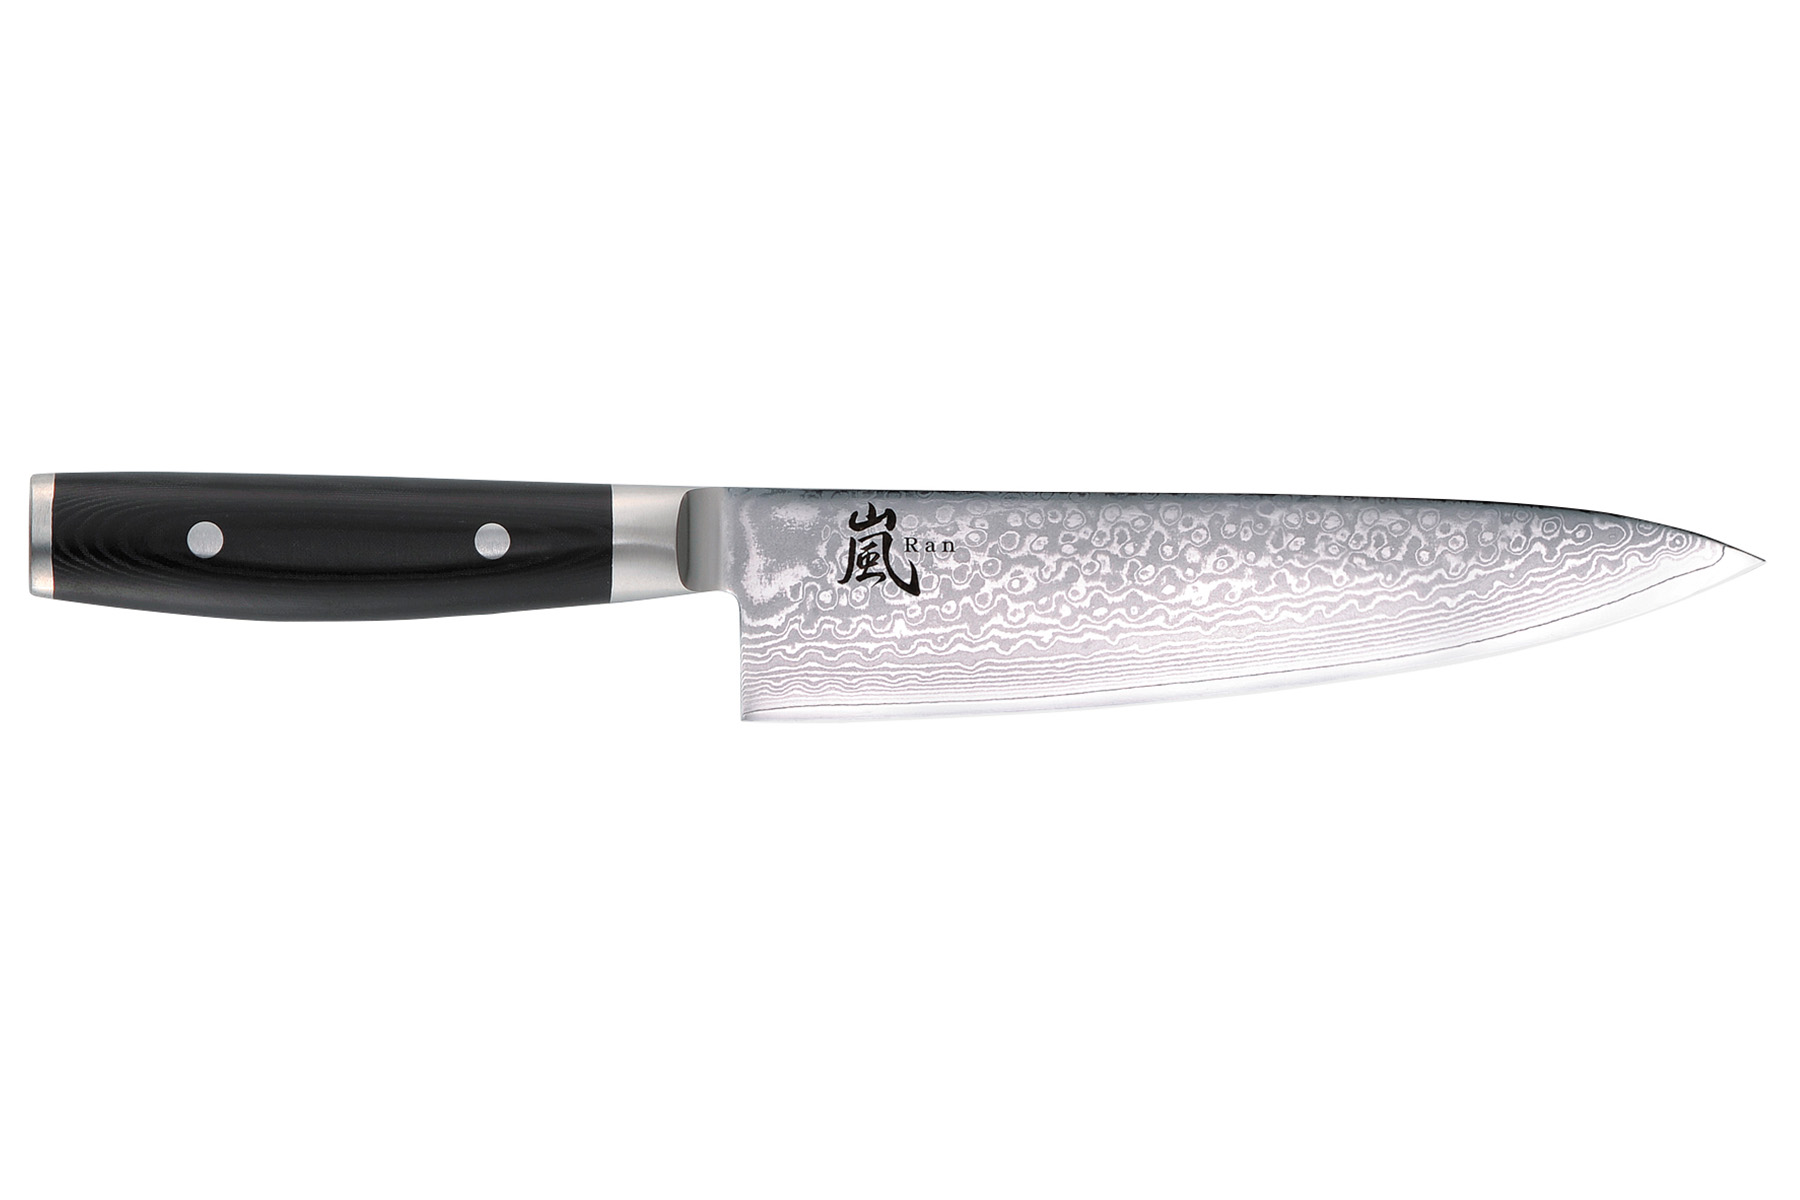 Couteau japonais Yaxell "Ran" - Couteau de chef 20 cm